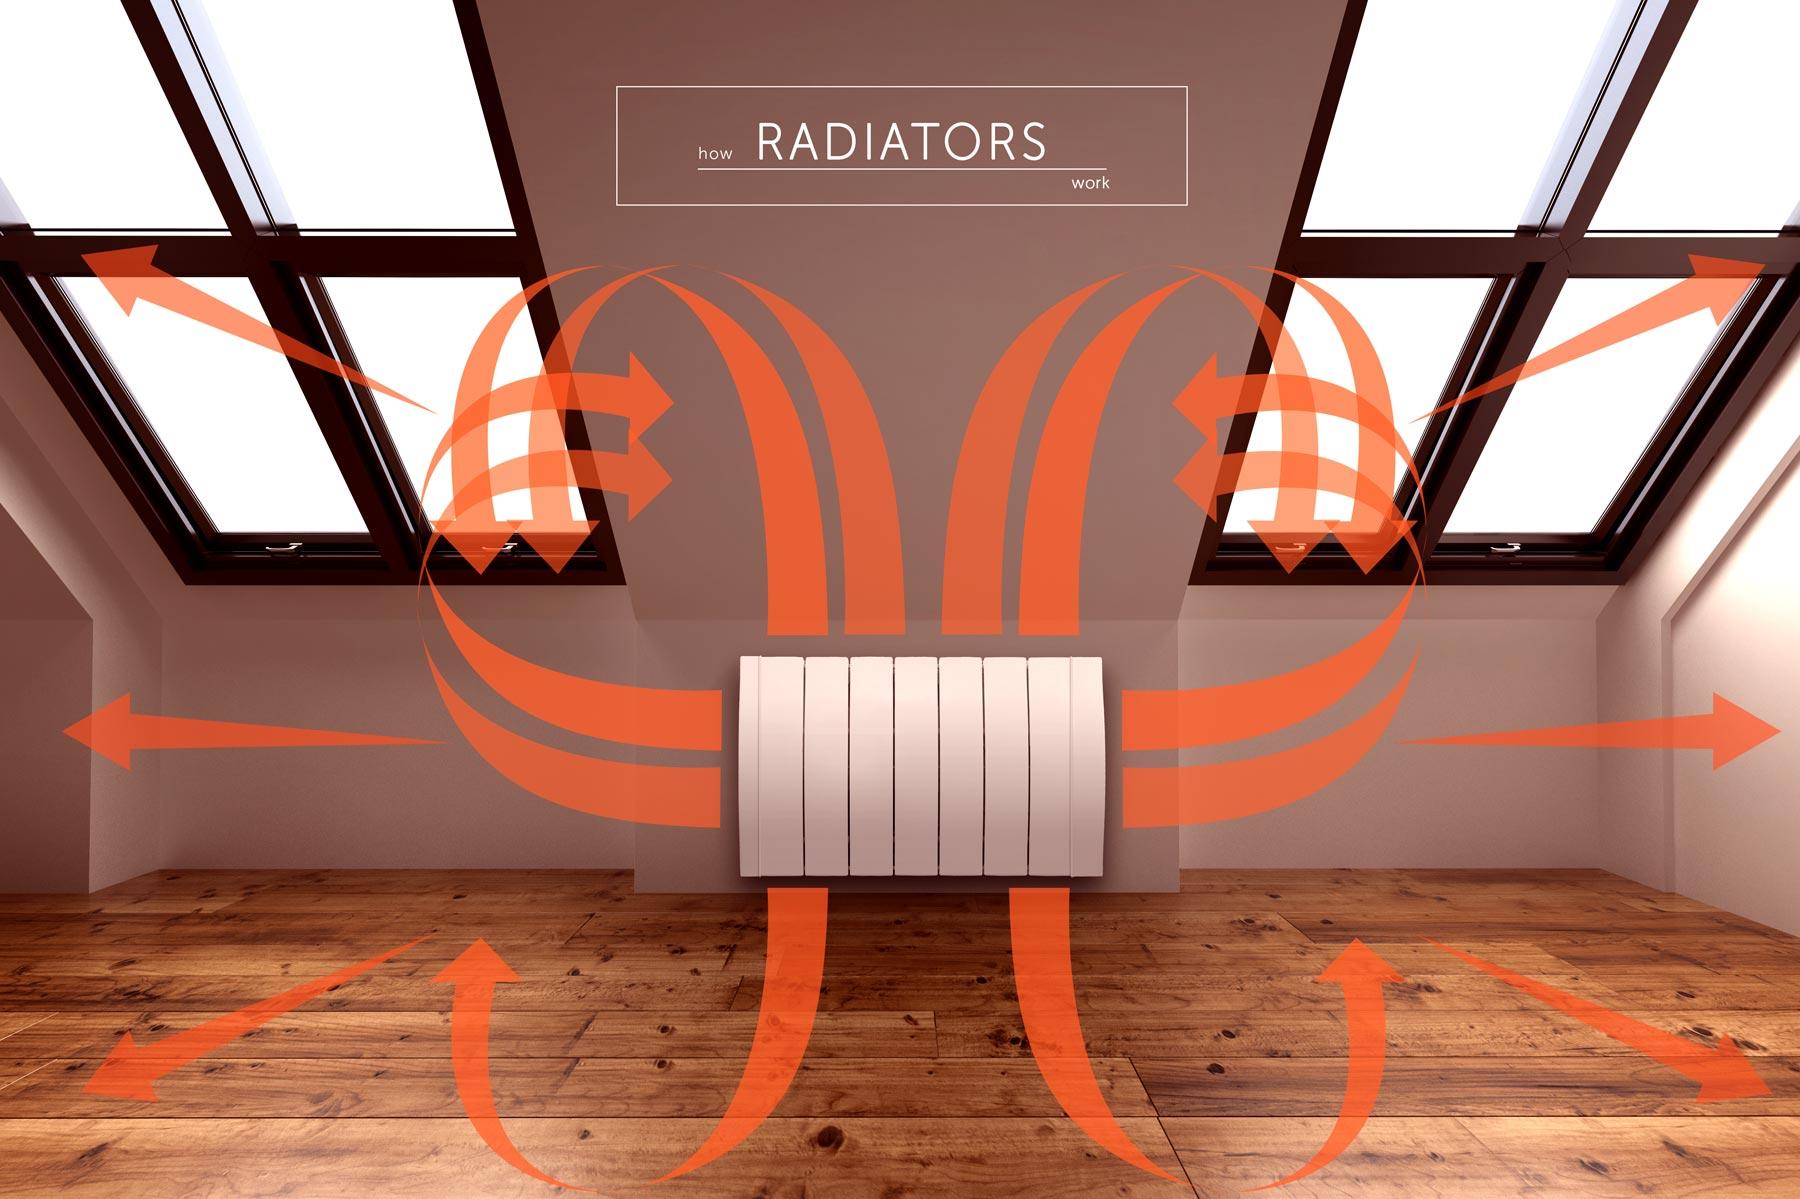 How radiators work